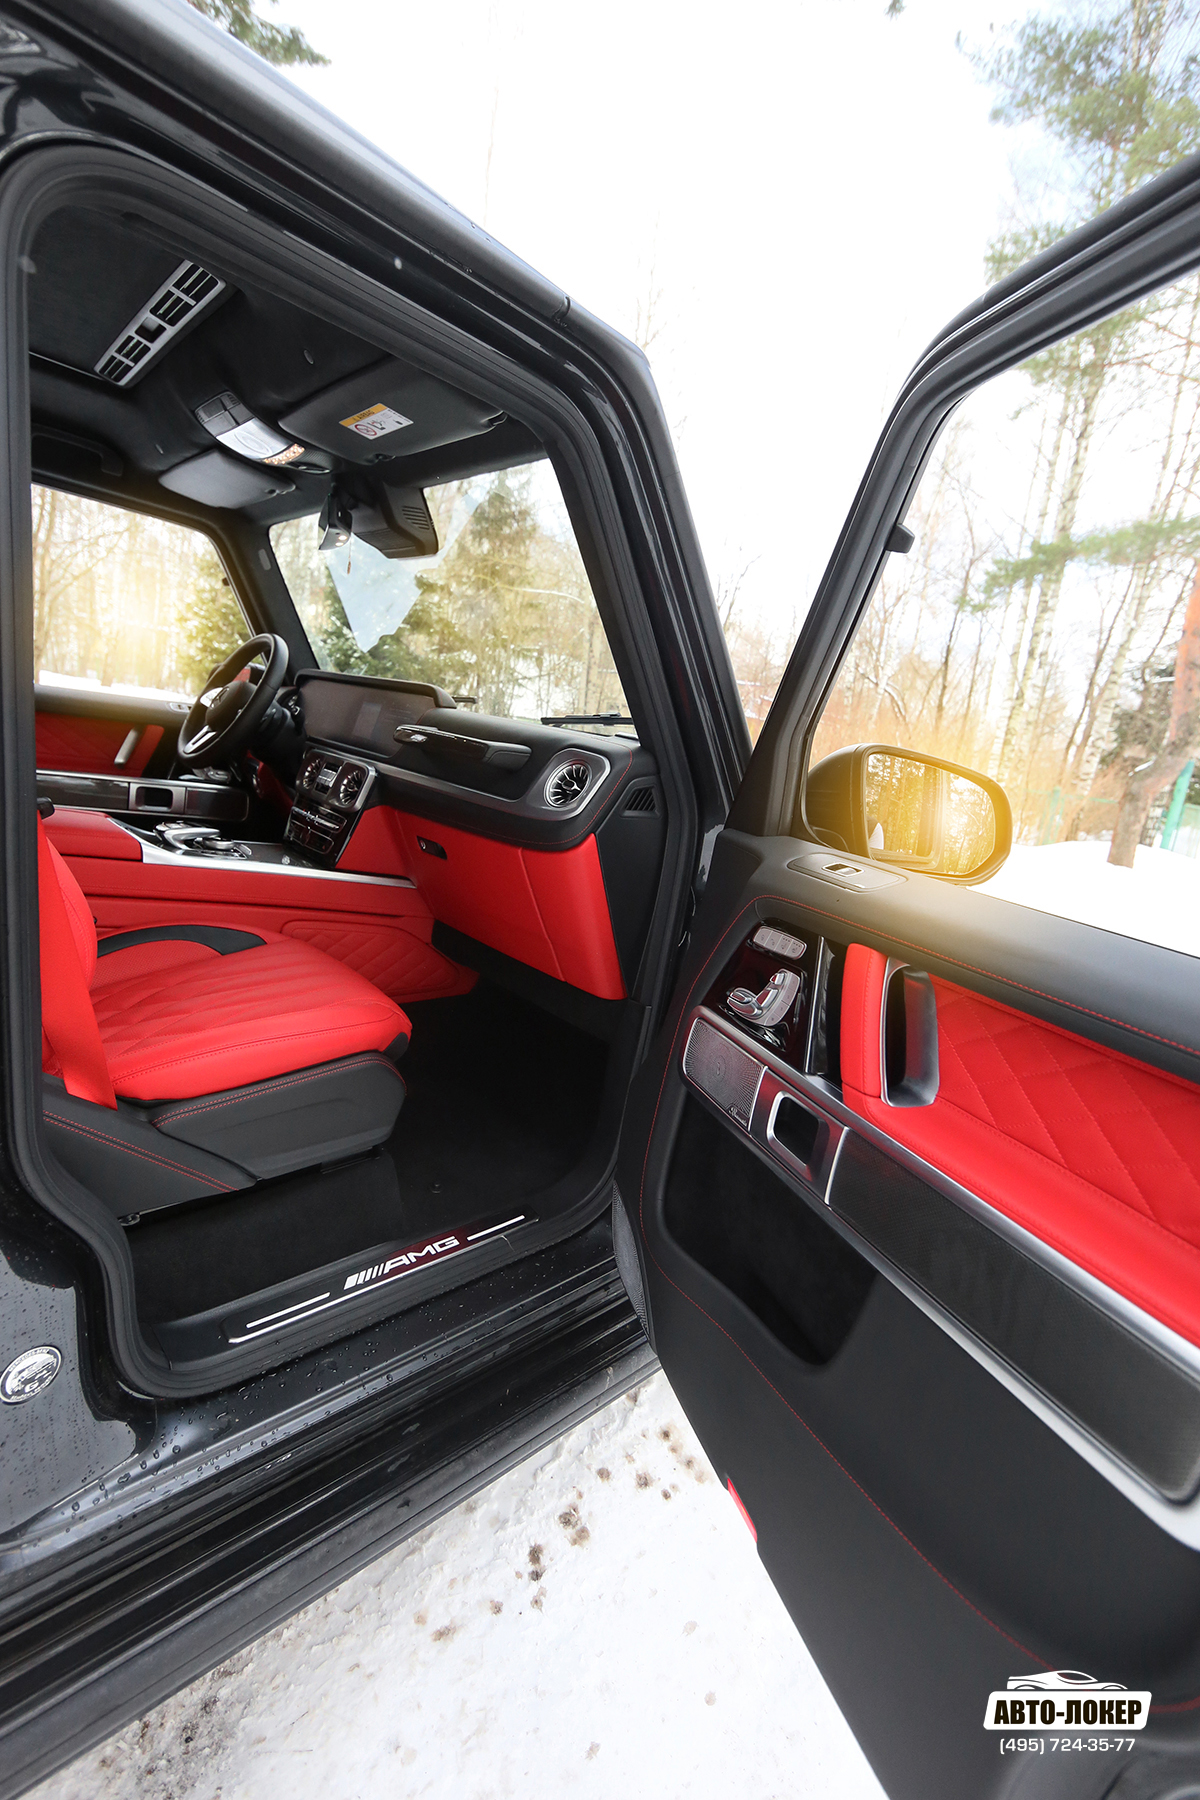 Перетяжка салона из красной кожи на Mercedes Gelandewagen AMG